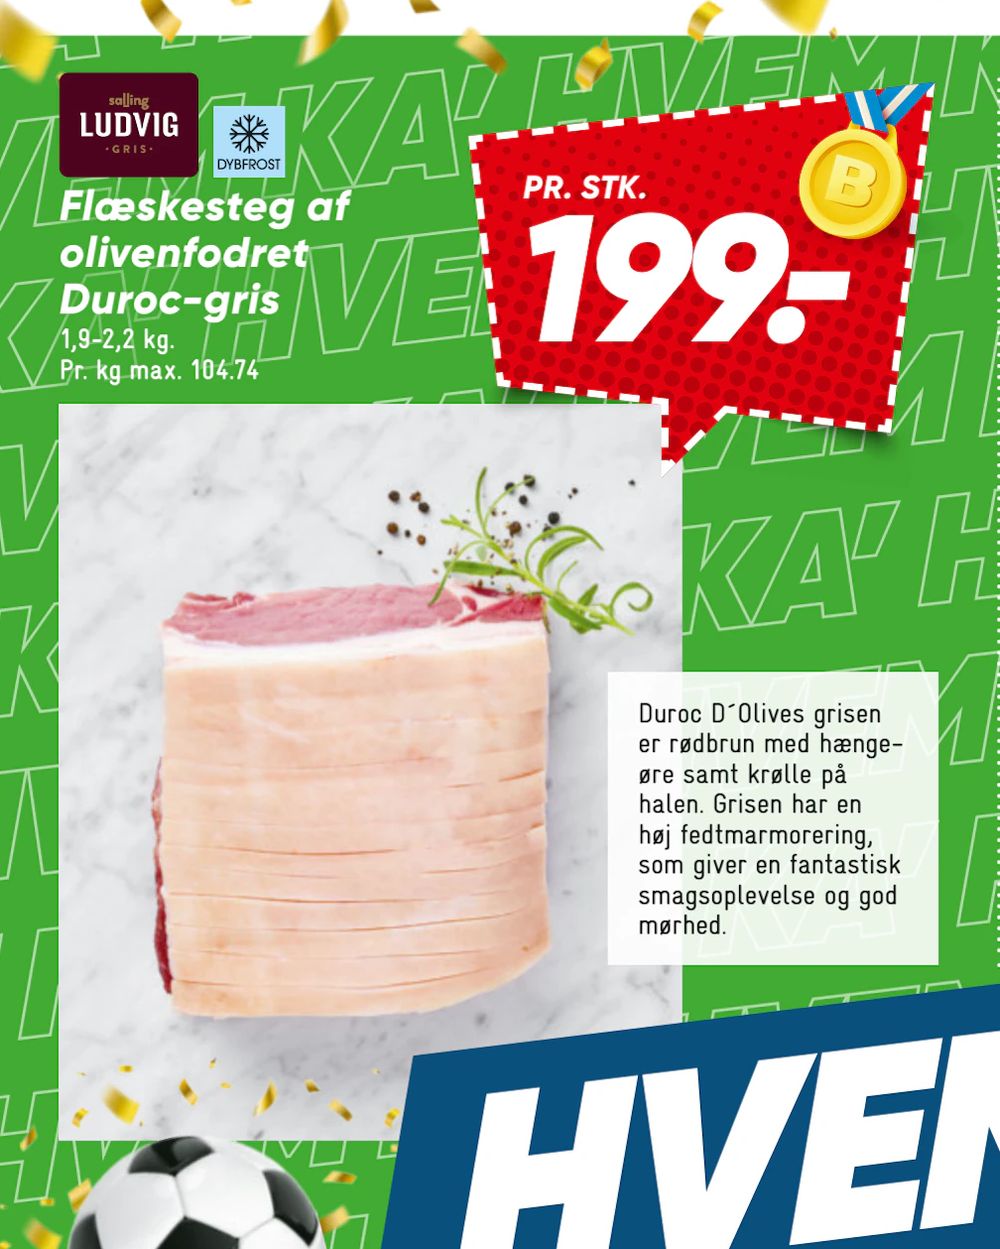 Tilbud på Flæskesteg af olivenfodret Duroc-gris fra Bilka til 199 kr.